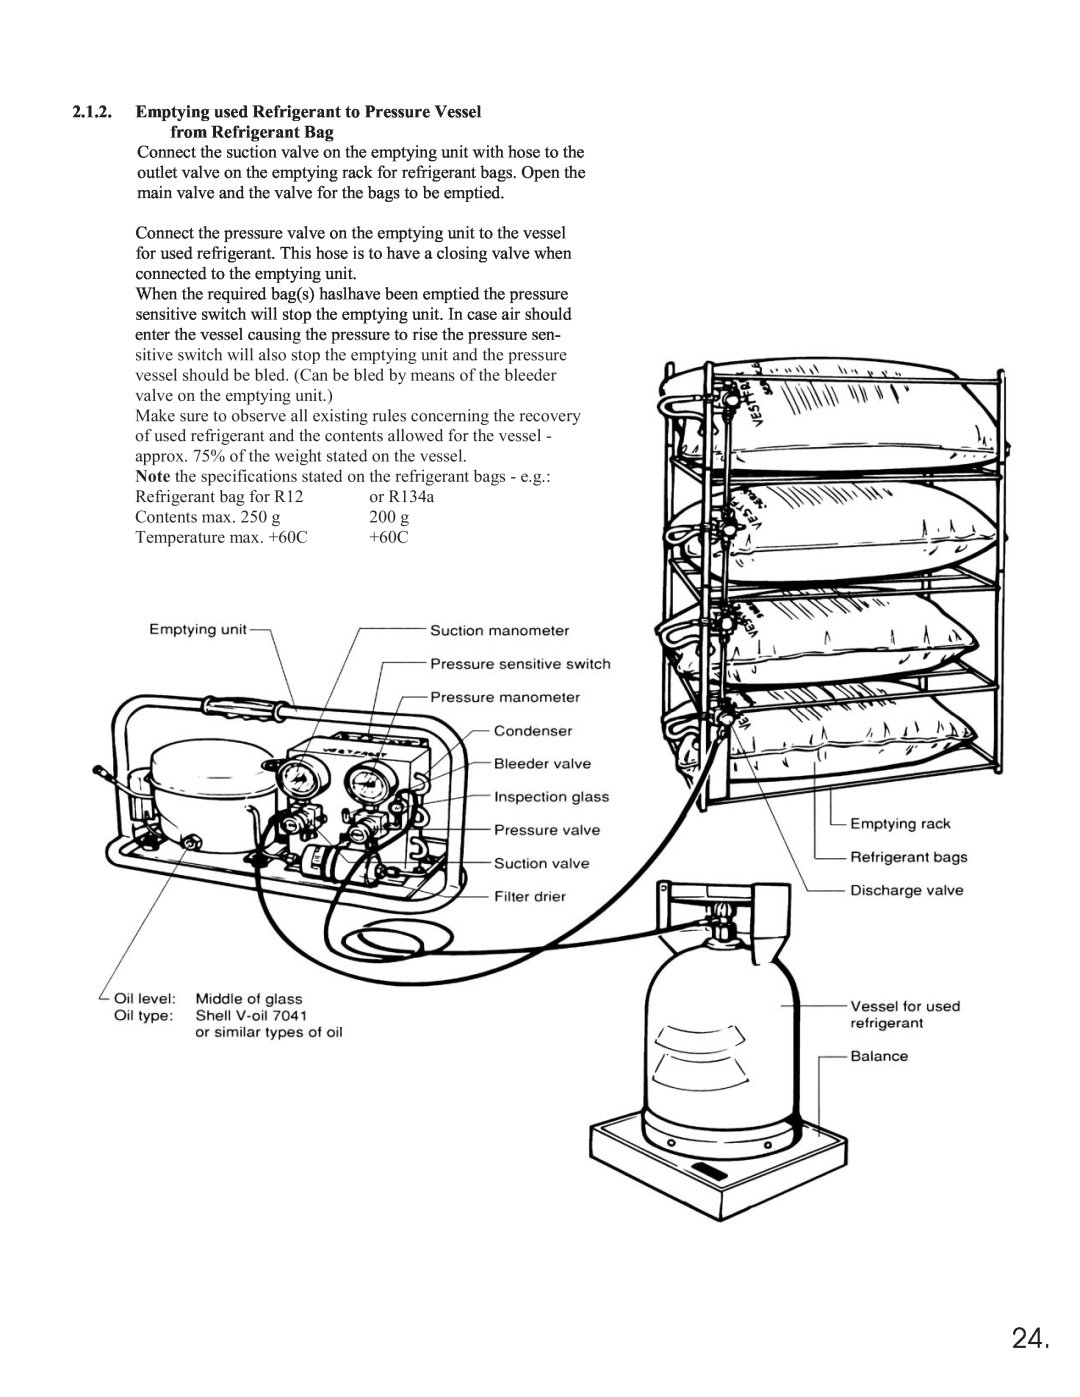 Equator 375 service manual from Refrigerant Bag 